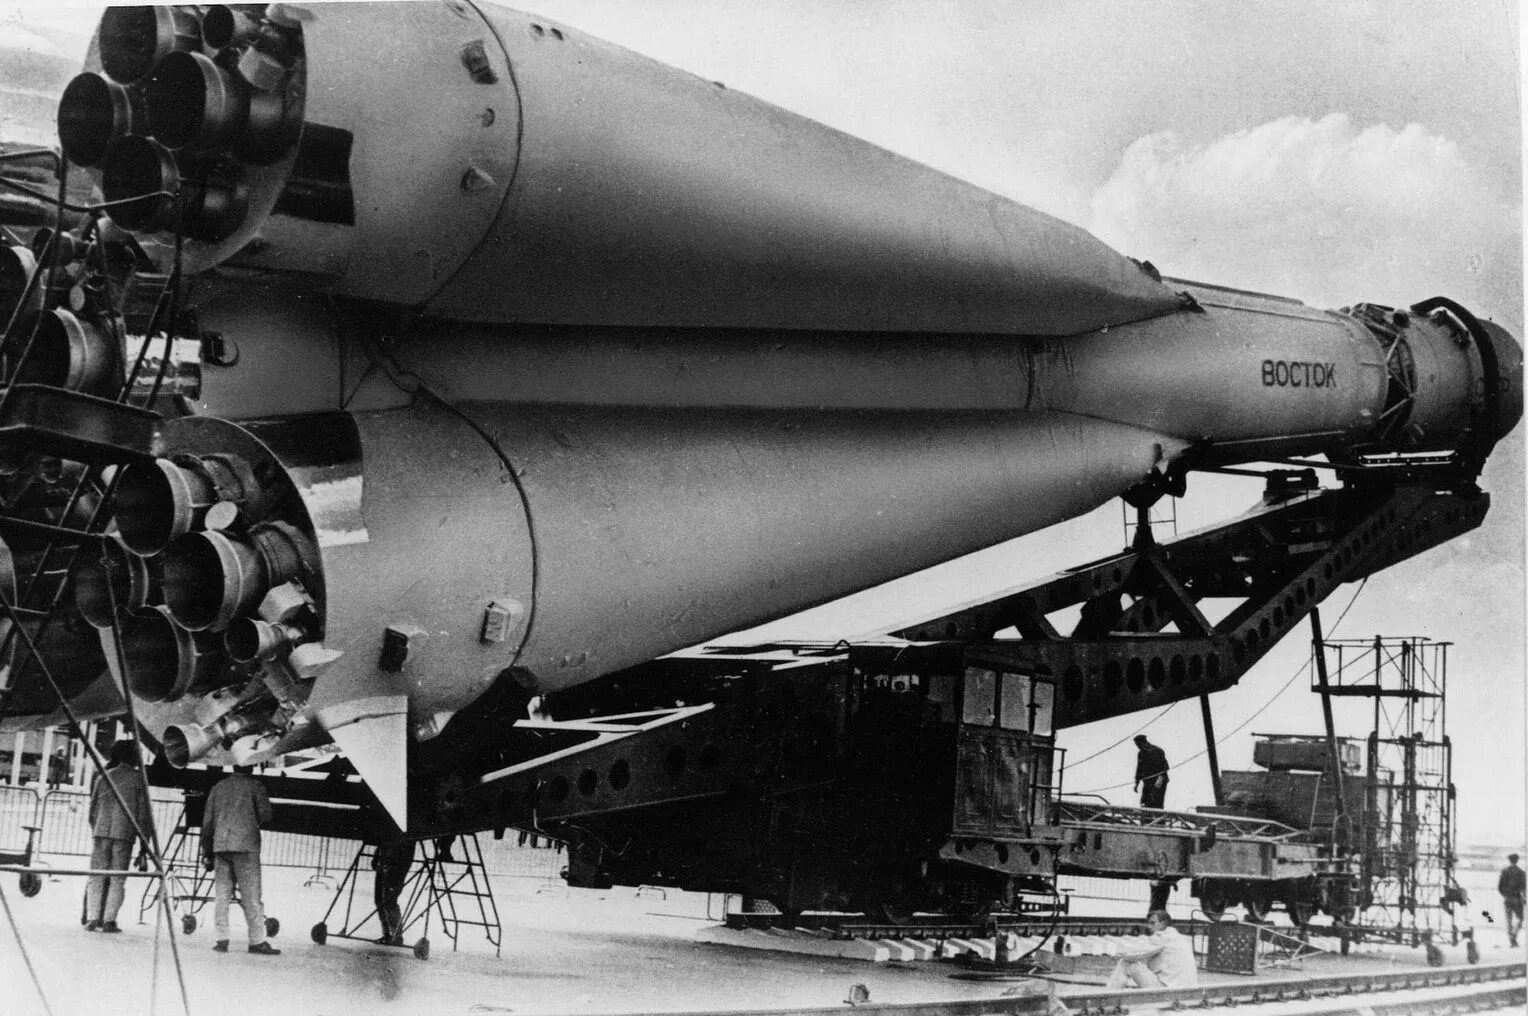 Первый советский космический корабль восток. Космический корабль Гагарина Восток 1. Ракета Юрия Гагарина Восток-1. Восток 1 Гагарин 1961. Космический корабль Восток Юрия Гагарина 1961.